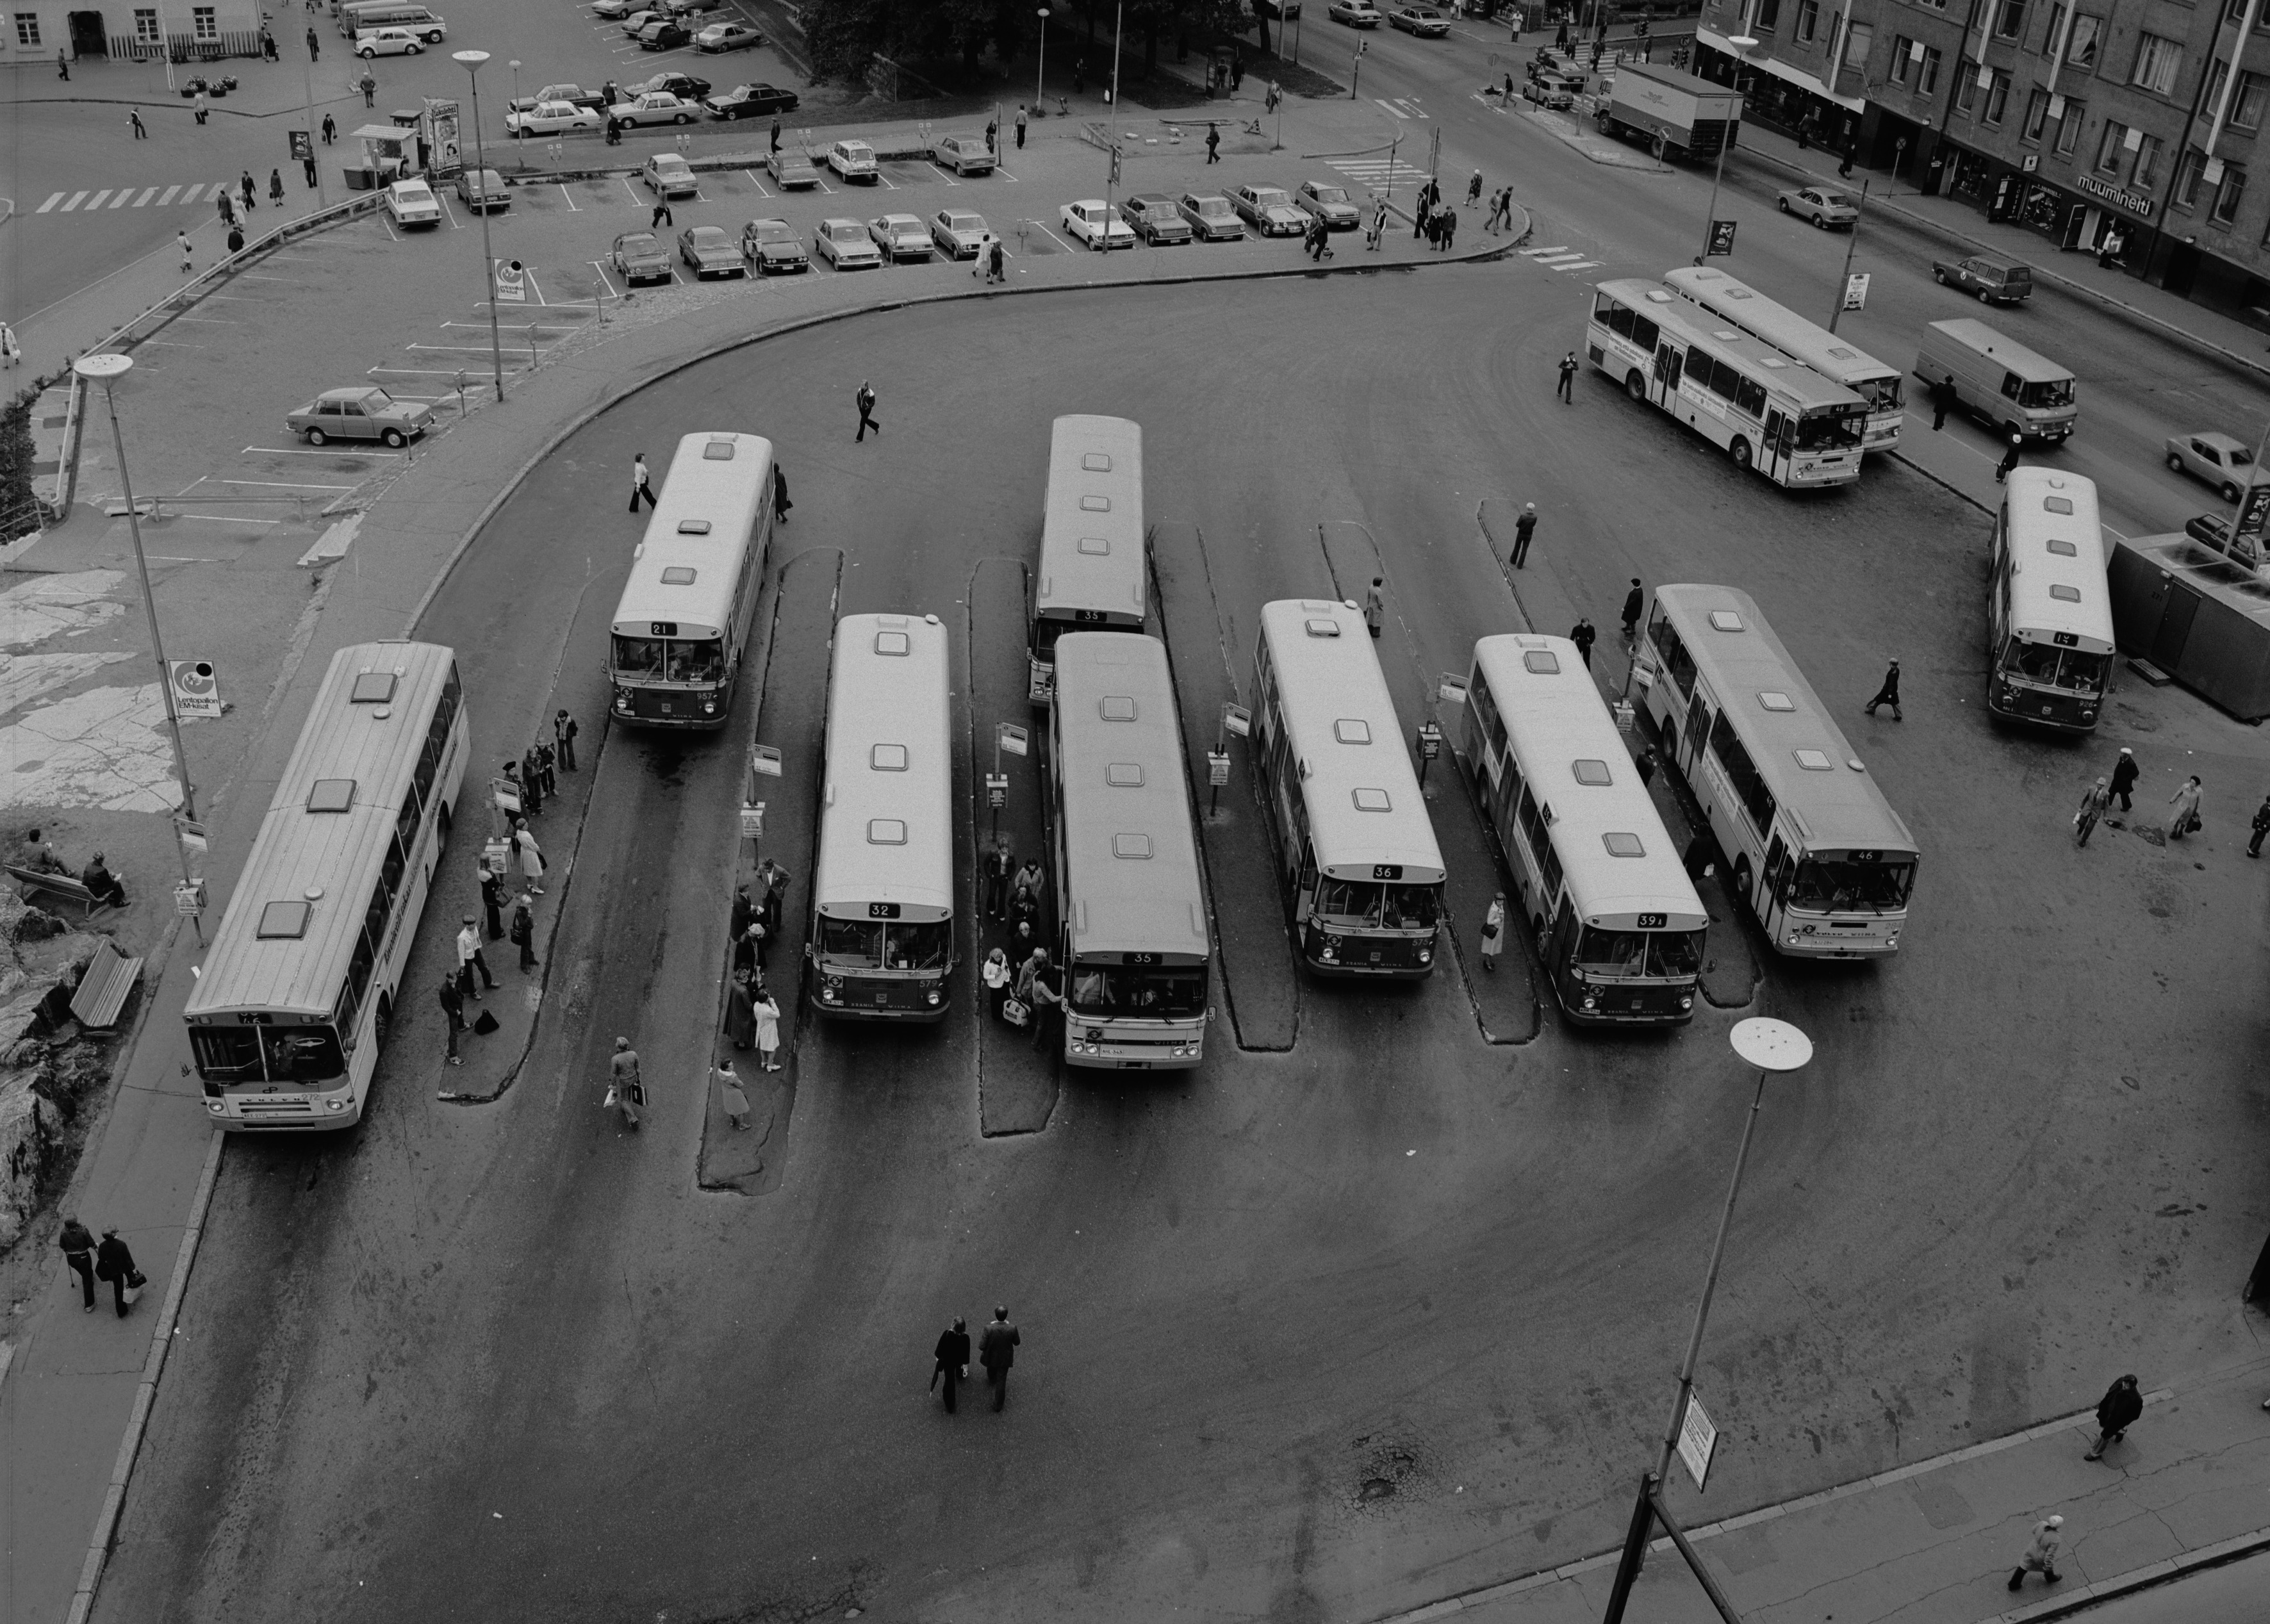 Kamppi, linja-autoasema. HKL:n busseja Simonkentällä Annankatu 34:n katolta nähtynä.